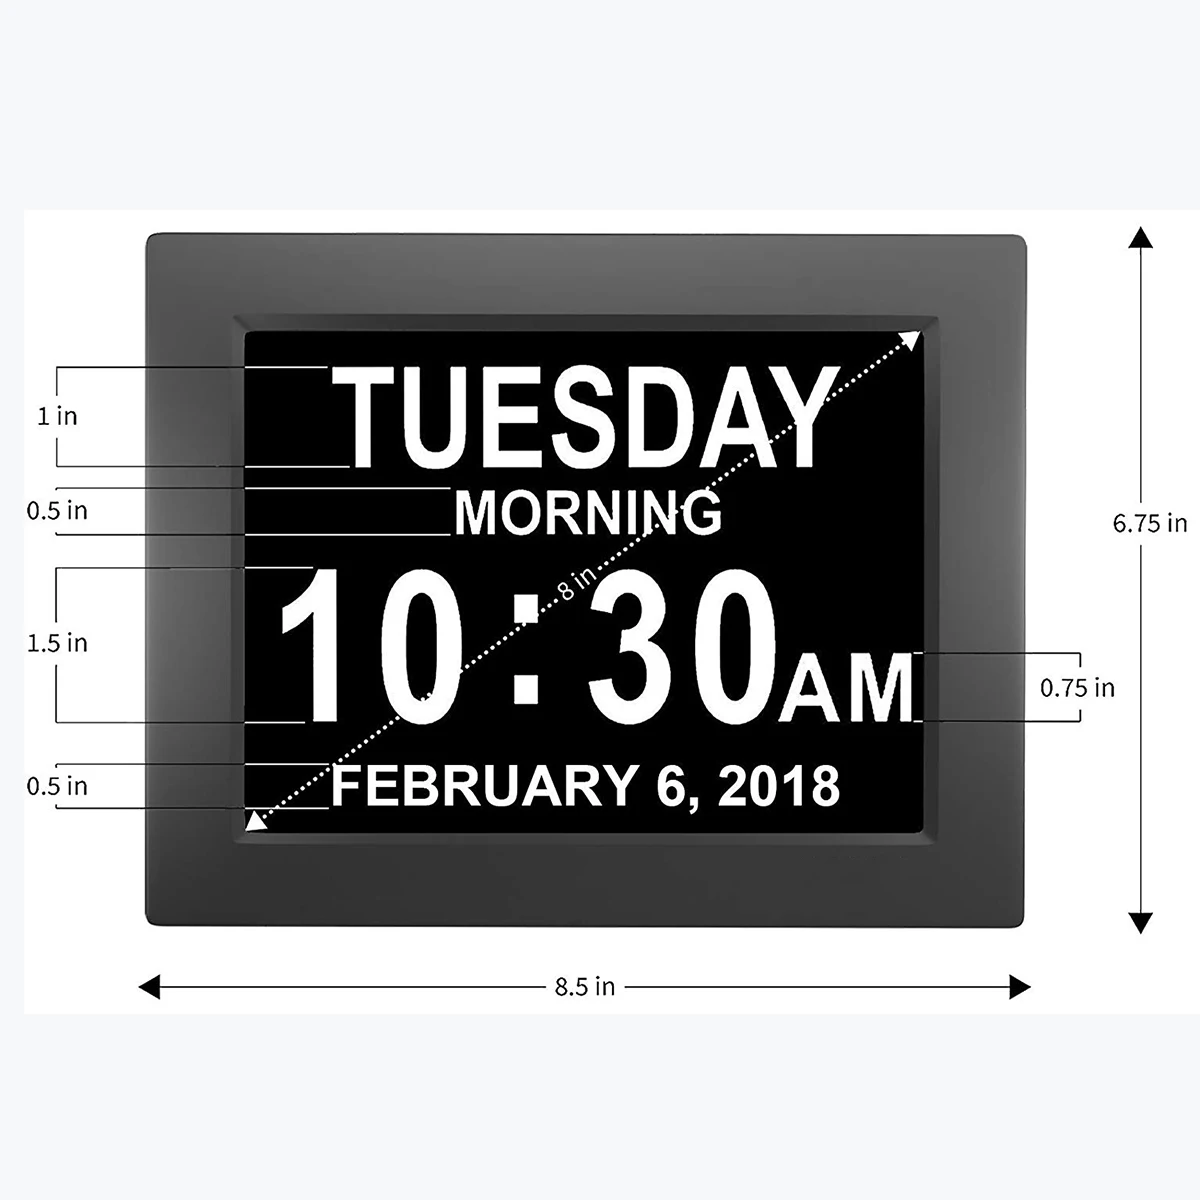 LCD Ciparu Pulkstenis Kalendārs Datums Diena Laiks, Pulkstenis Auto Dimming 8 Valodās HD Displejs Daudzfunkciju Elektronisko Galda /Galda Pulkstenis